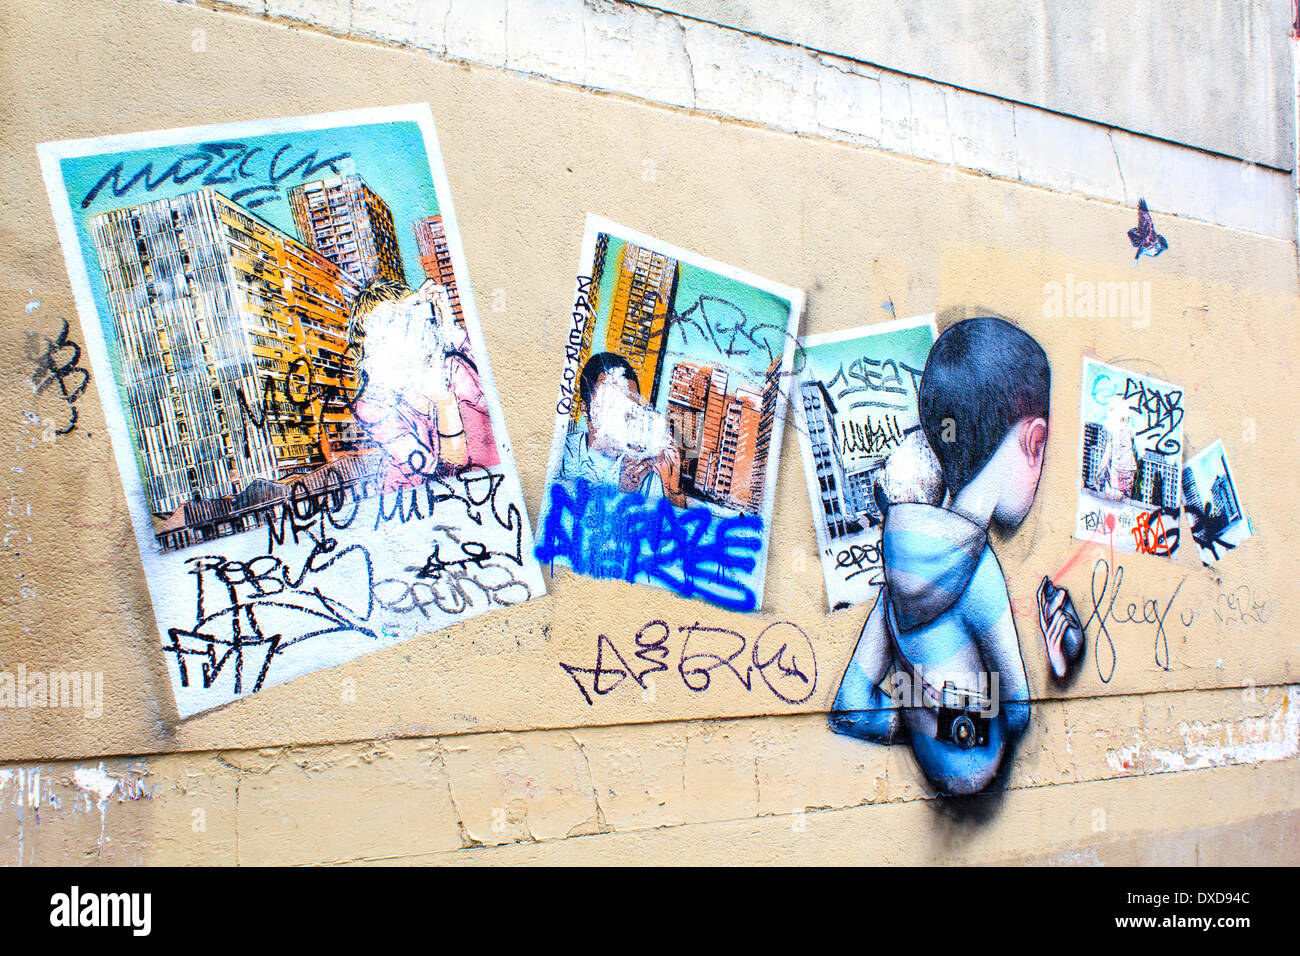 Mur avec peintures graffiti chevauchaient à Paris, France Banque D'Images